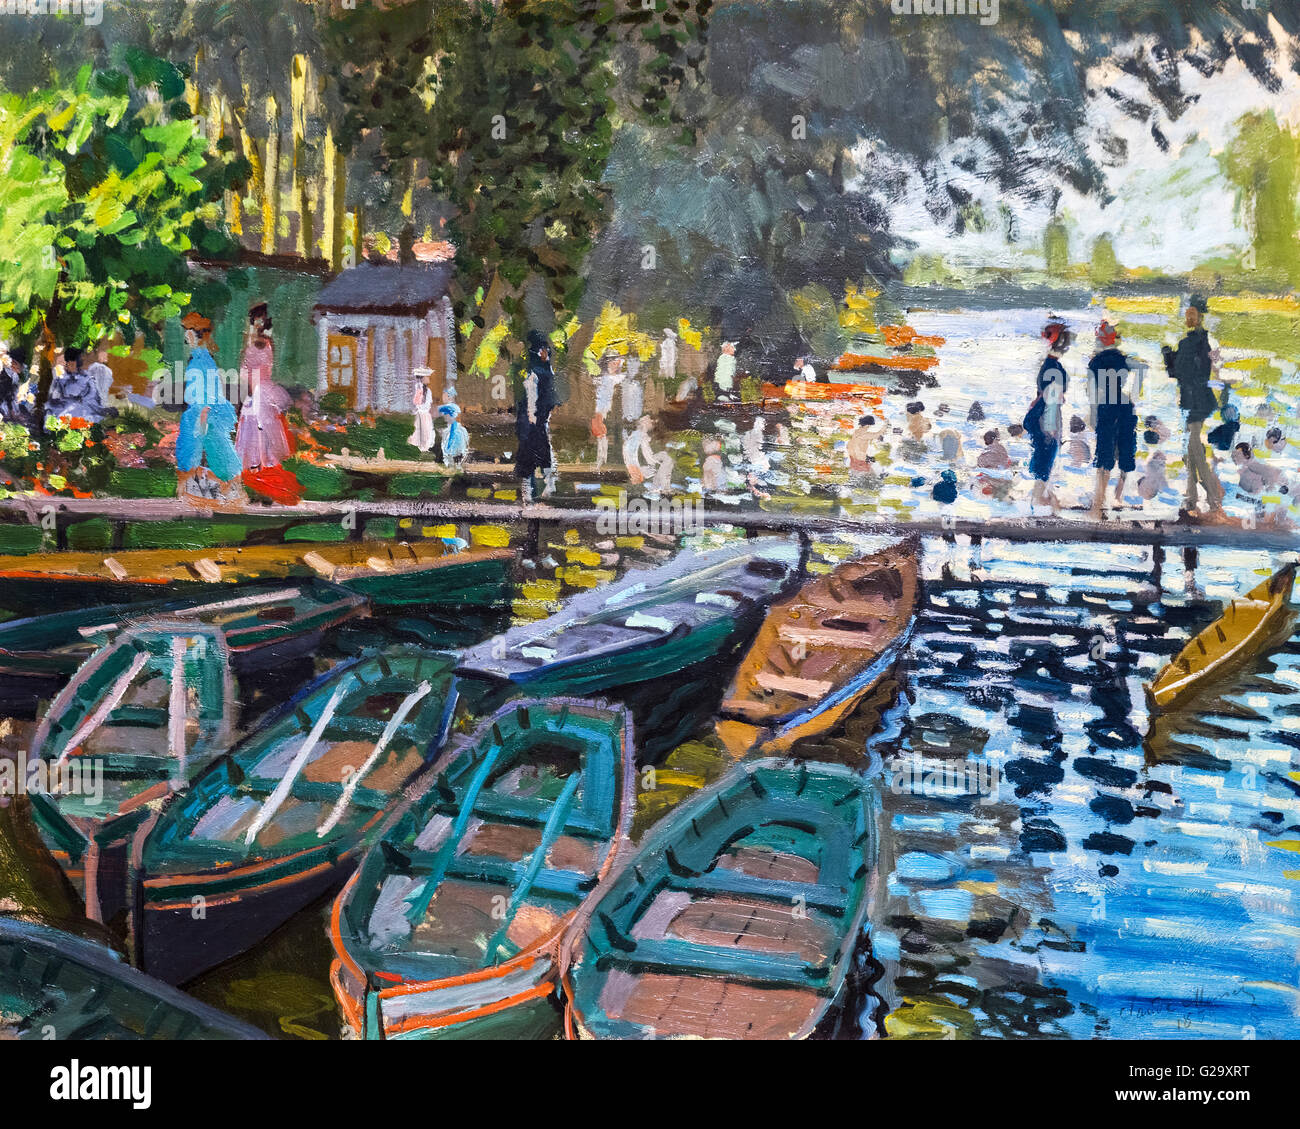 Baigneurs à la Grenouillère Claude Monet, huile sur toile, 1869. Cette peinture montre un populaire lieu de baignade et de plaisance sur la Seine près de Bougival à l'ouest de Paris. Banque D'Images